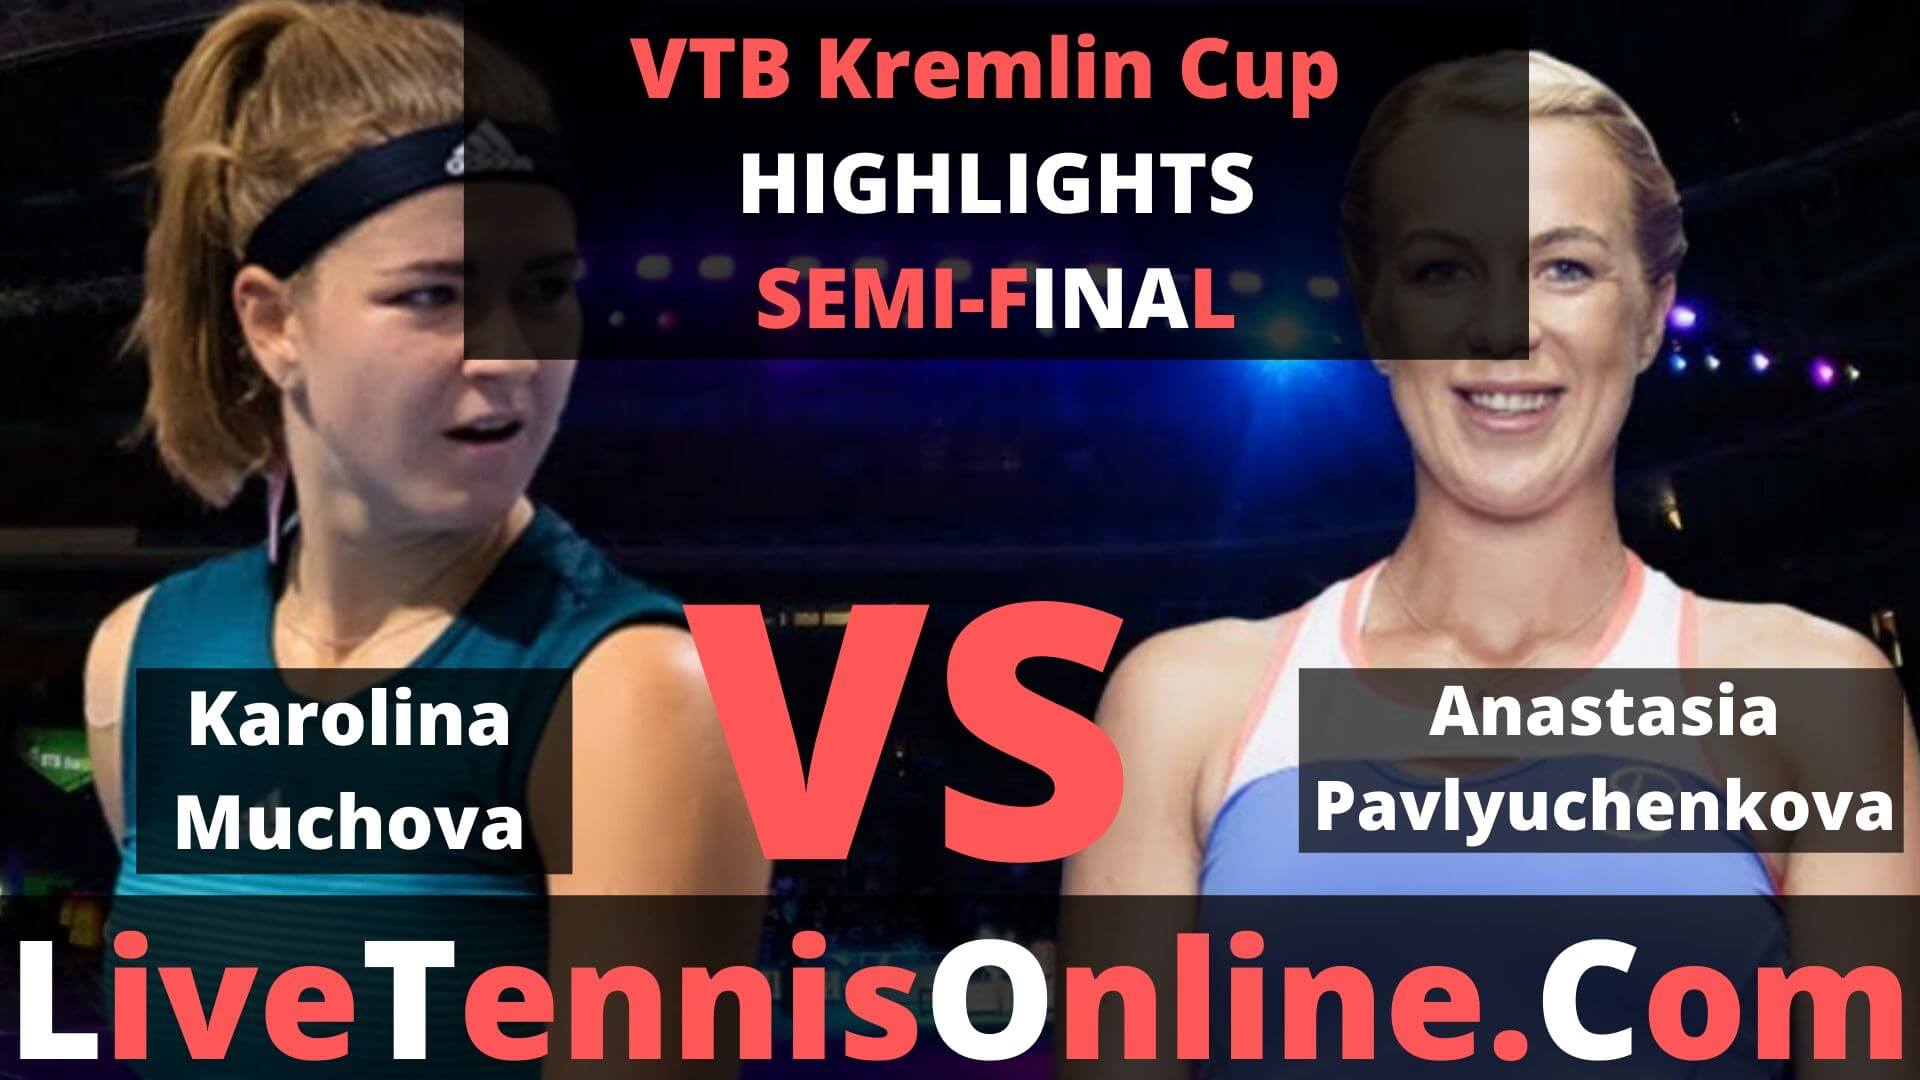 Anastasia Pavlyuchenkova Vs Karolina Muchova Highlights 2019 VTB Kremlin Cup SF